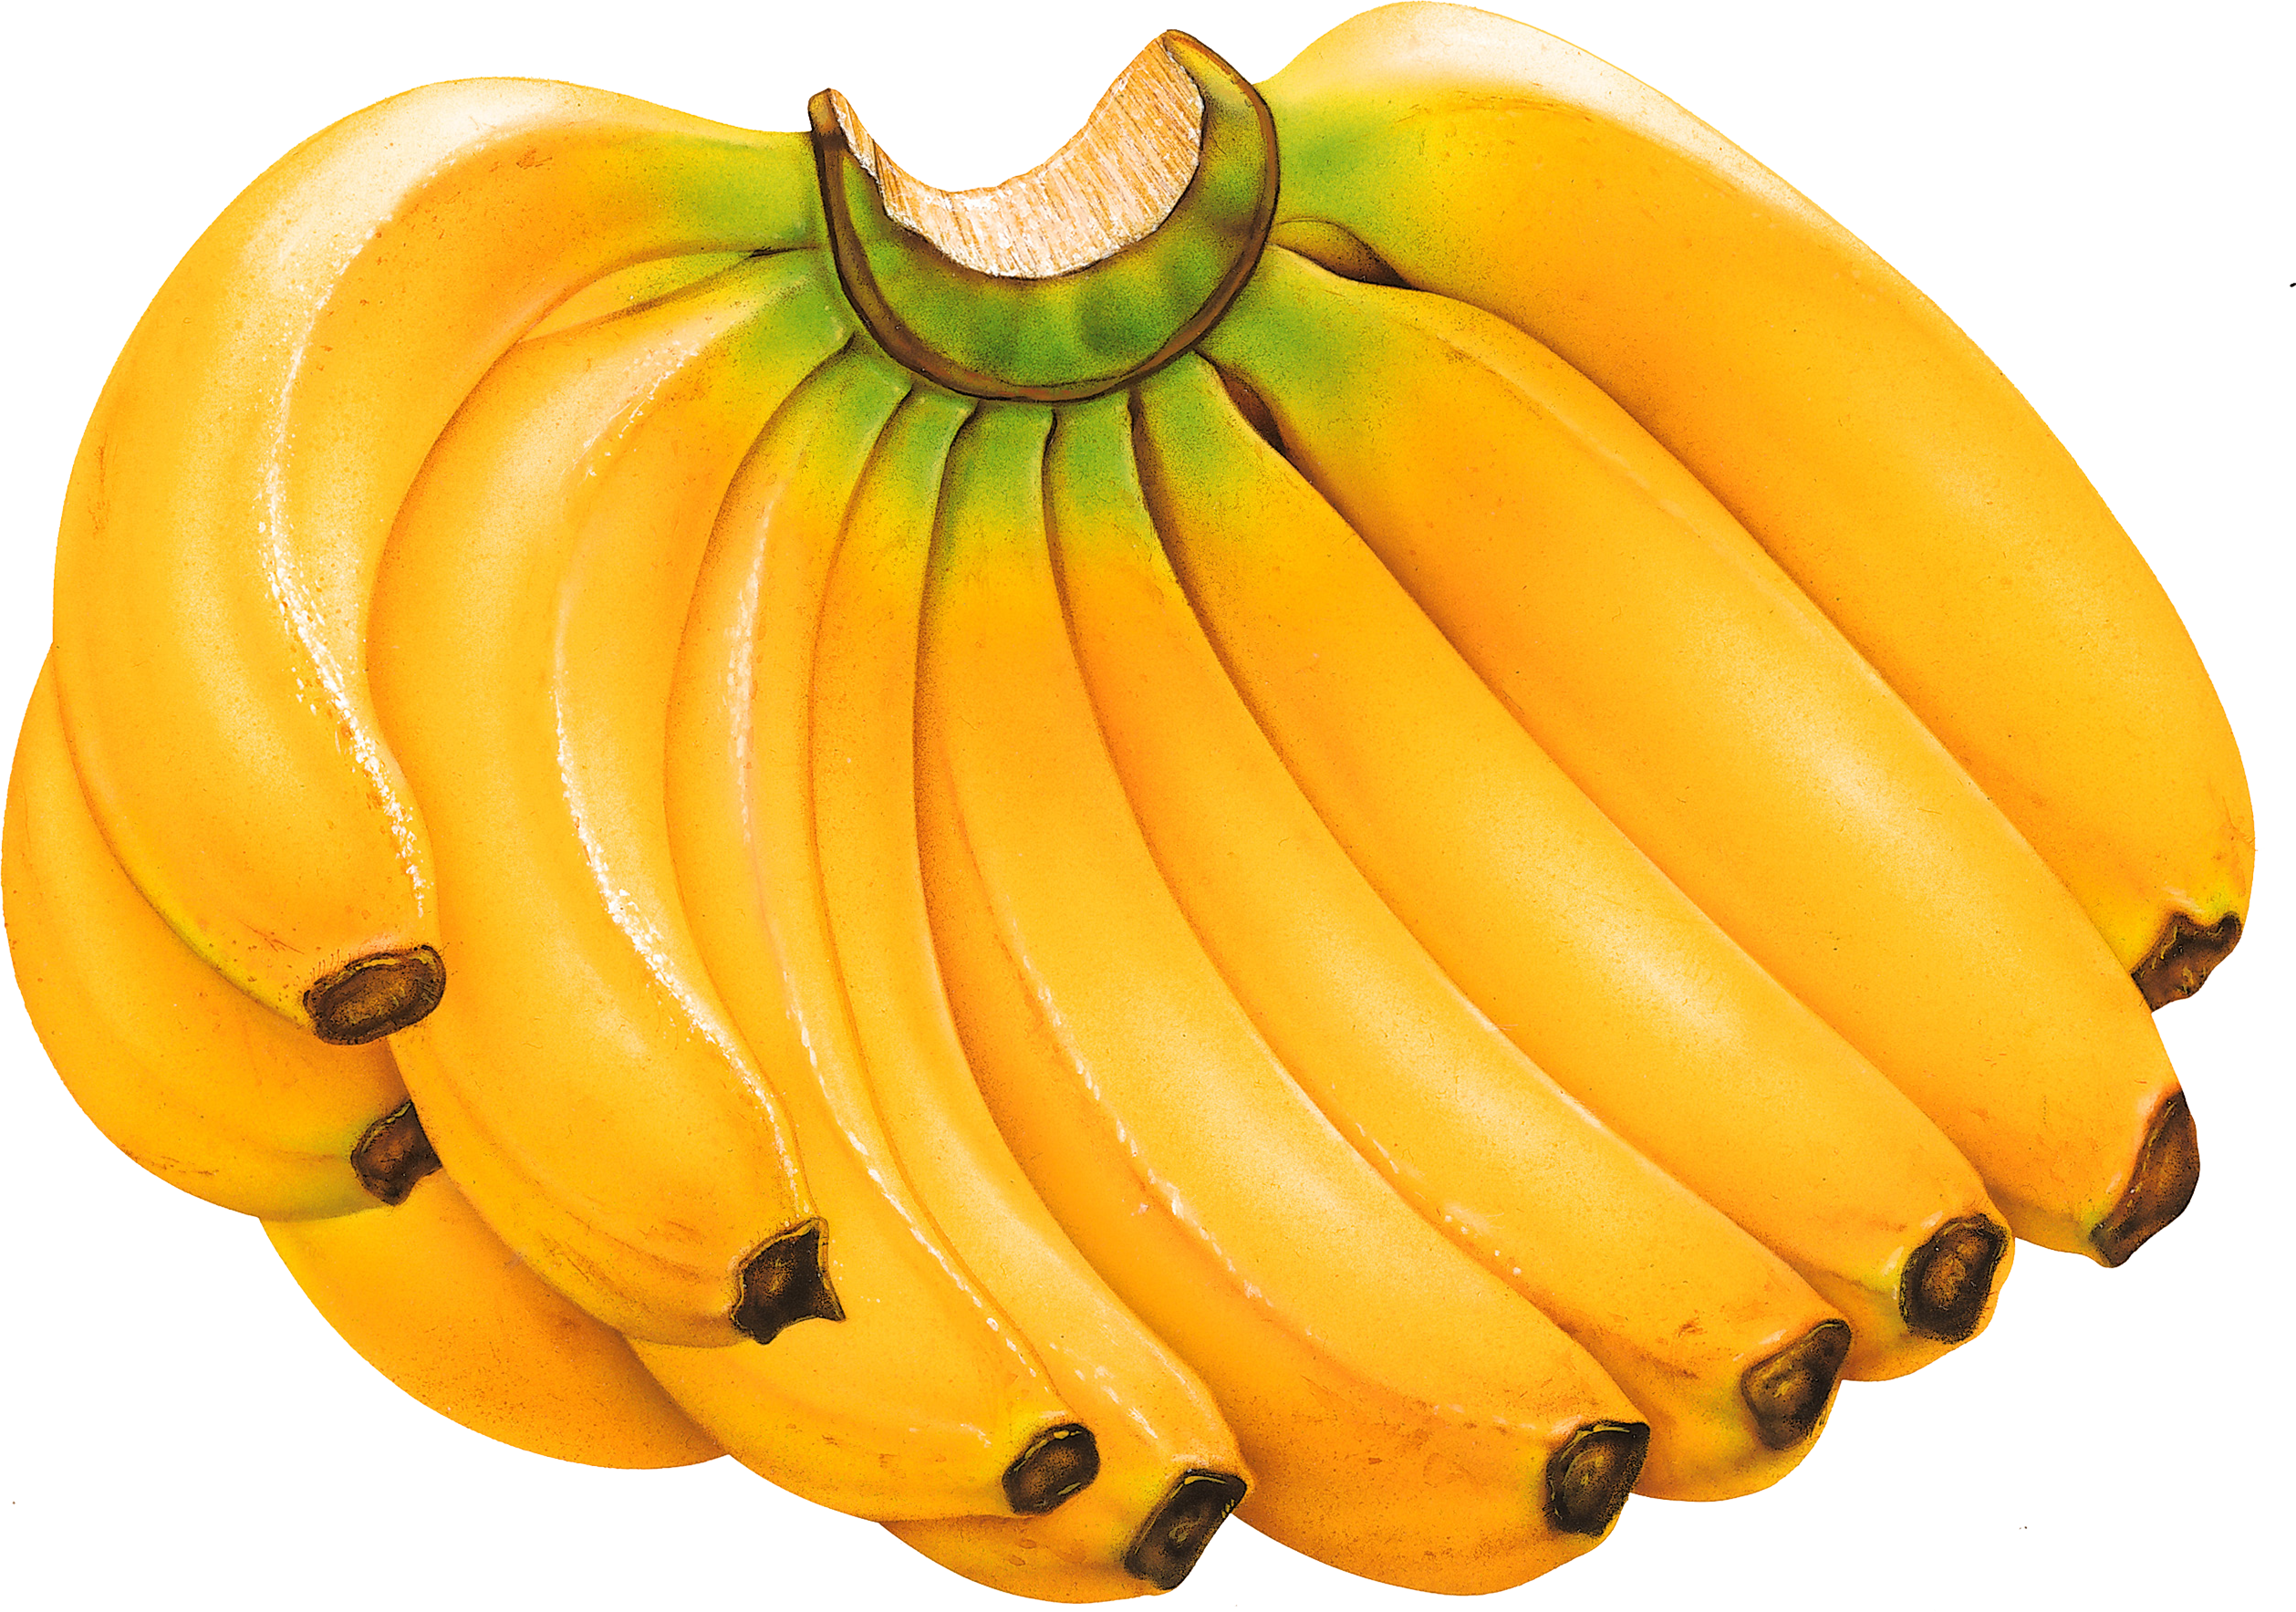 Banyak pisang